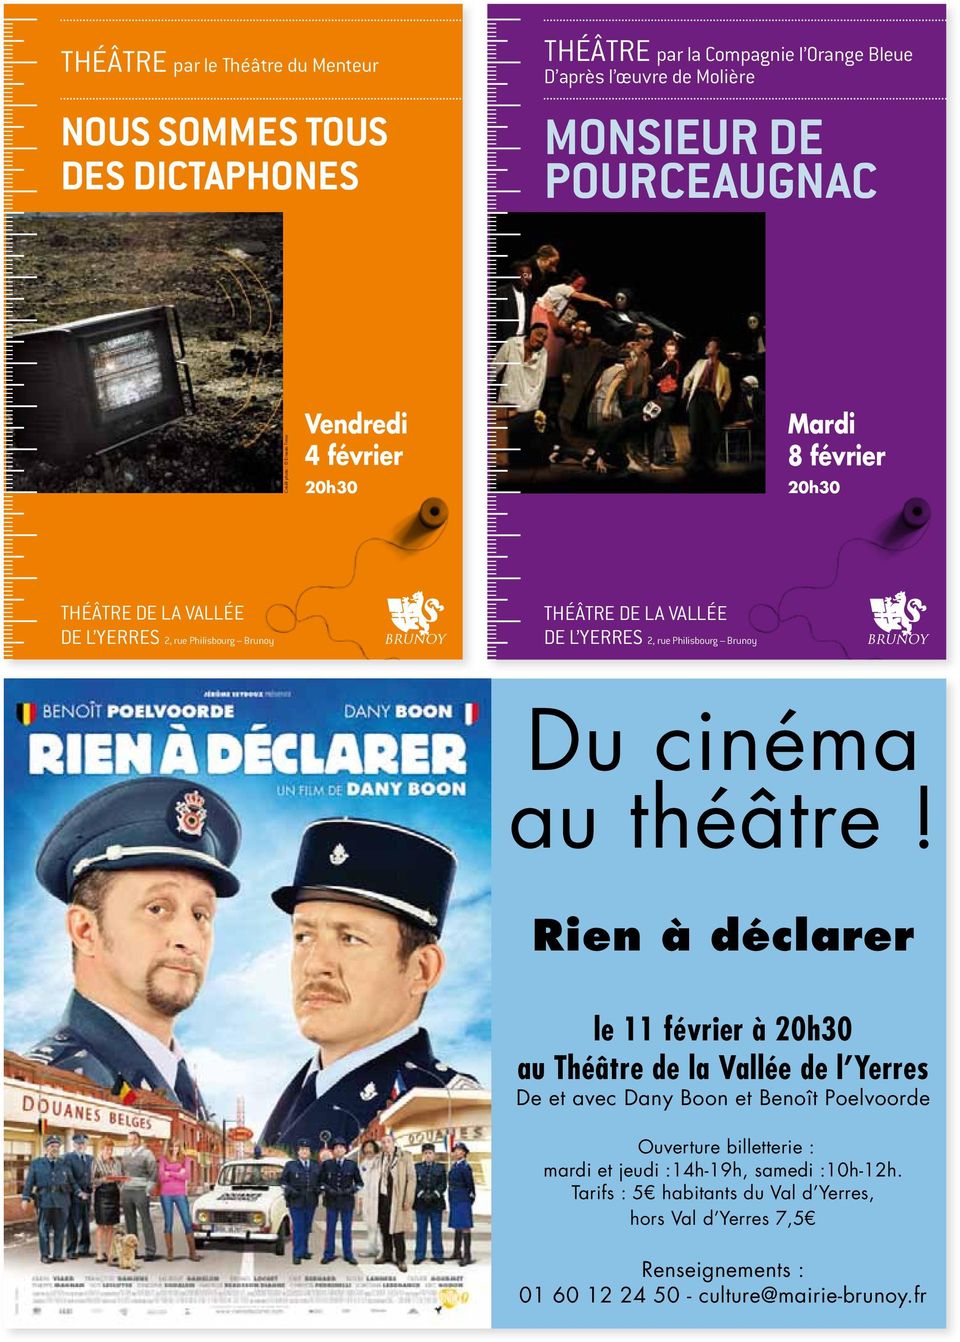 Philisbourg Brunoy Du cinéma au théâtre!